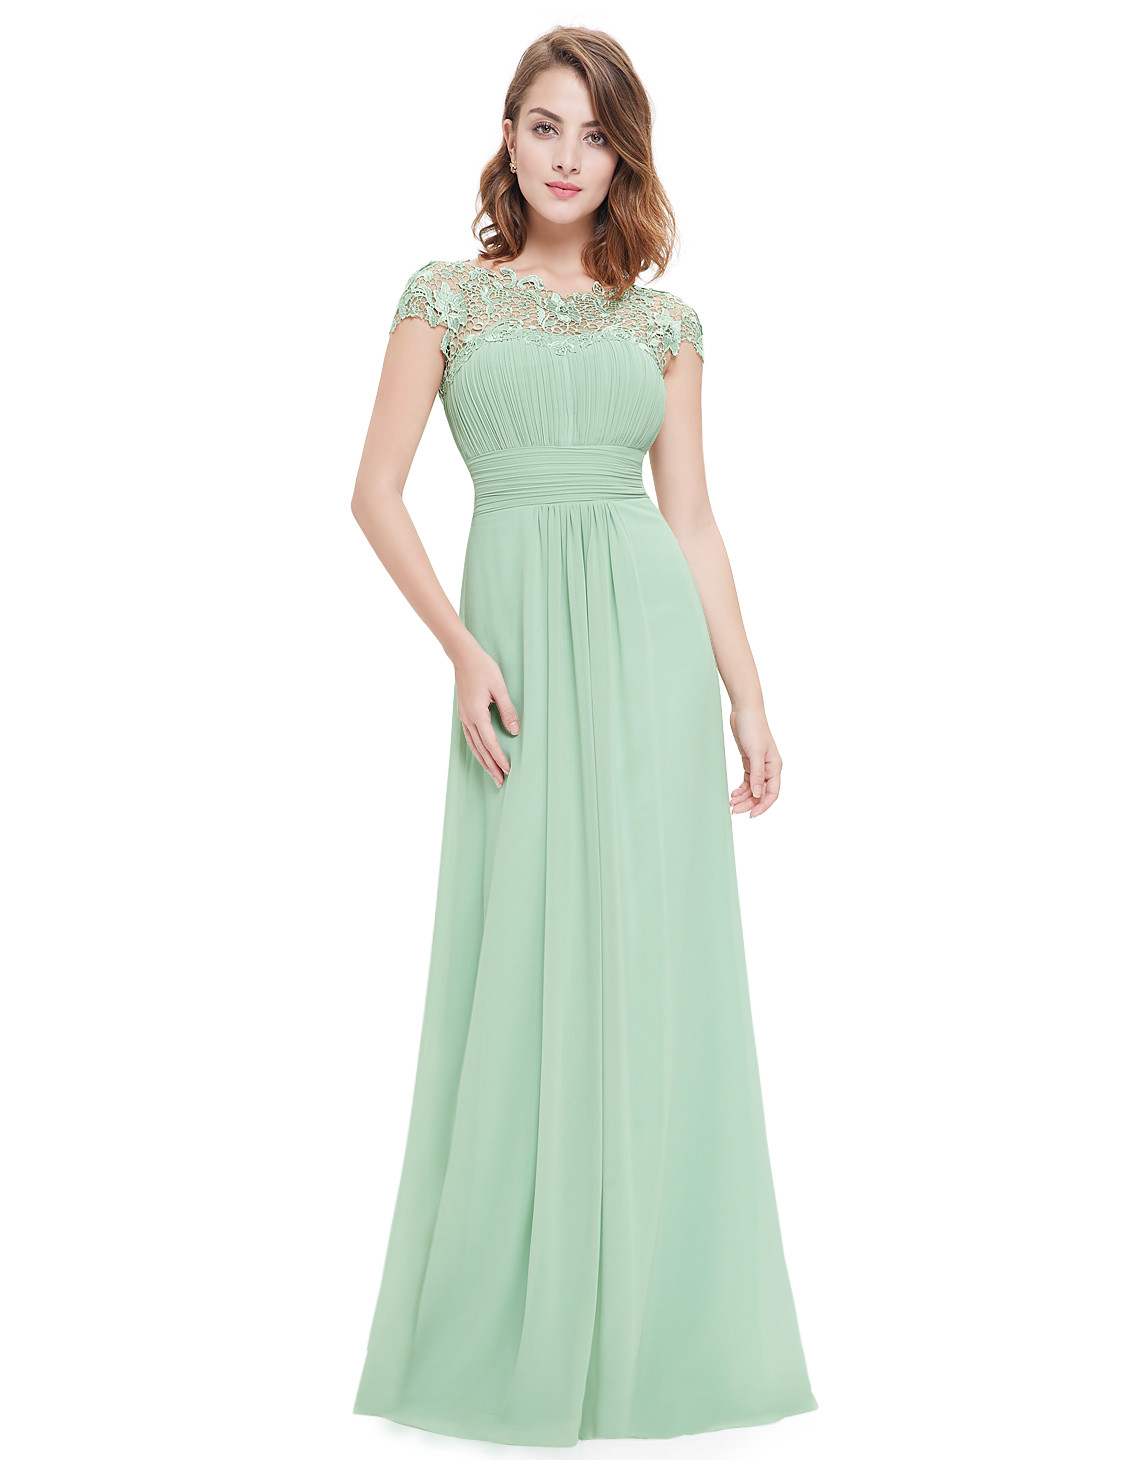 Sage Green Lacey Neckline Bridesmaid Dress